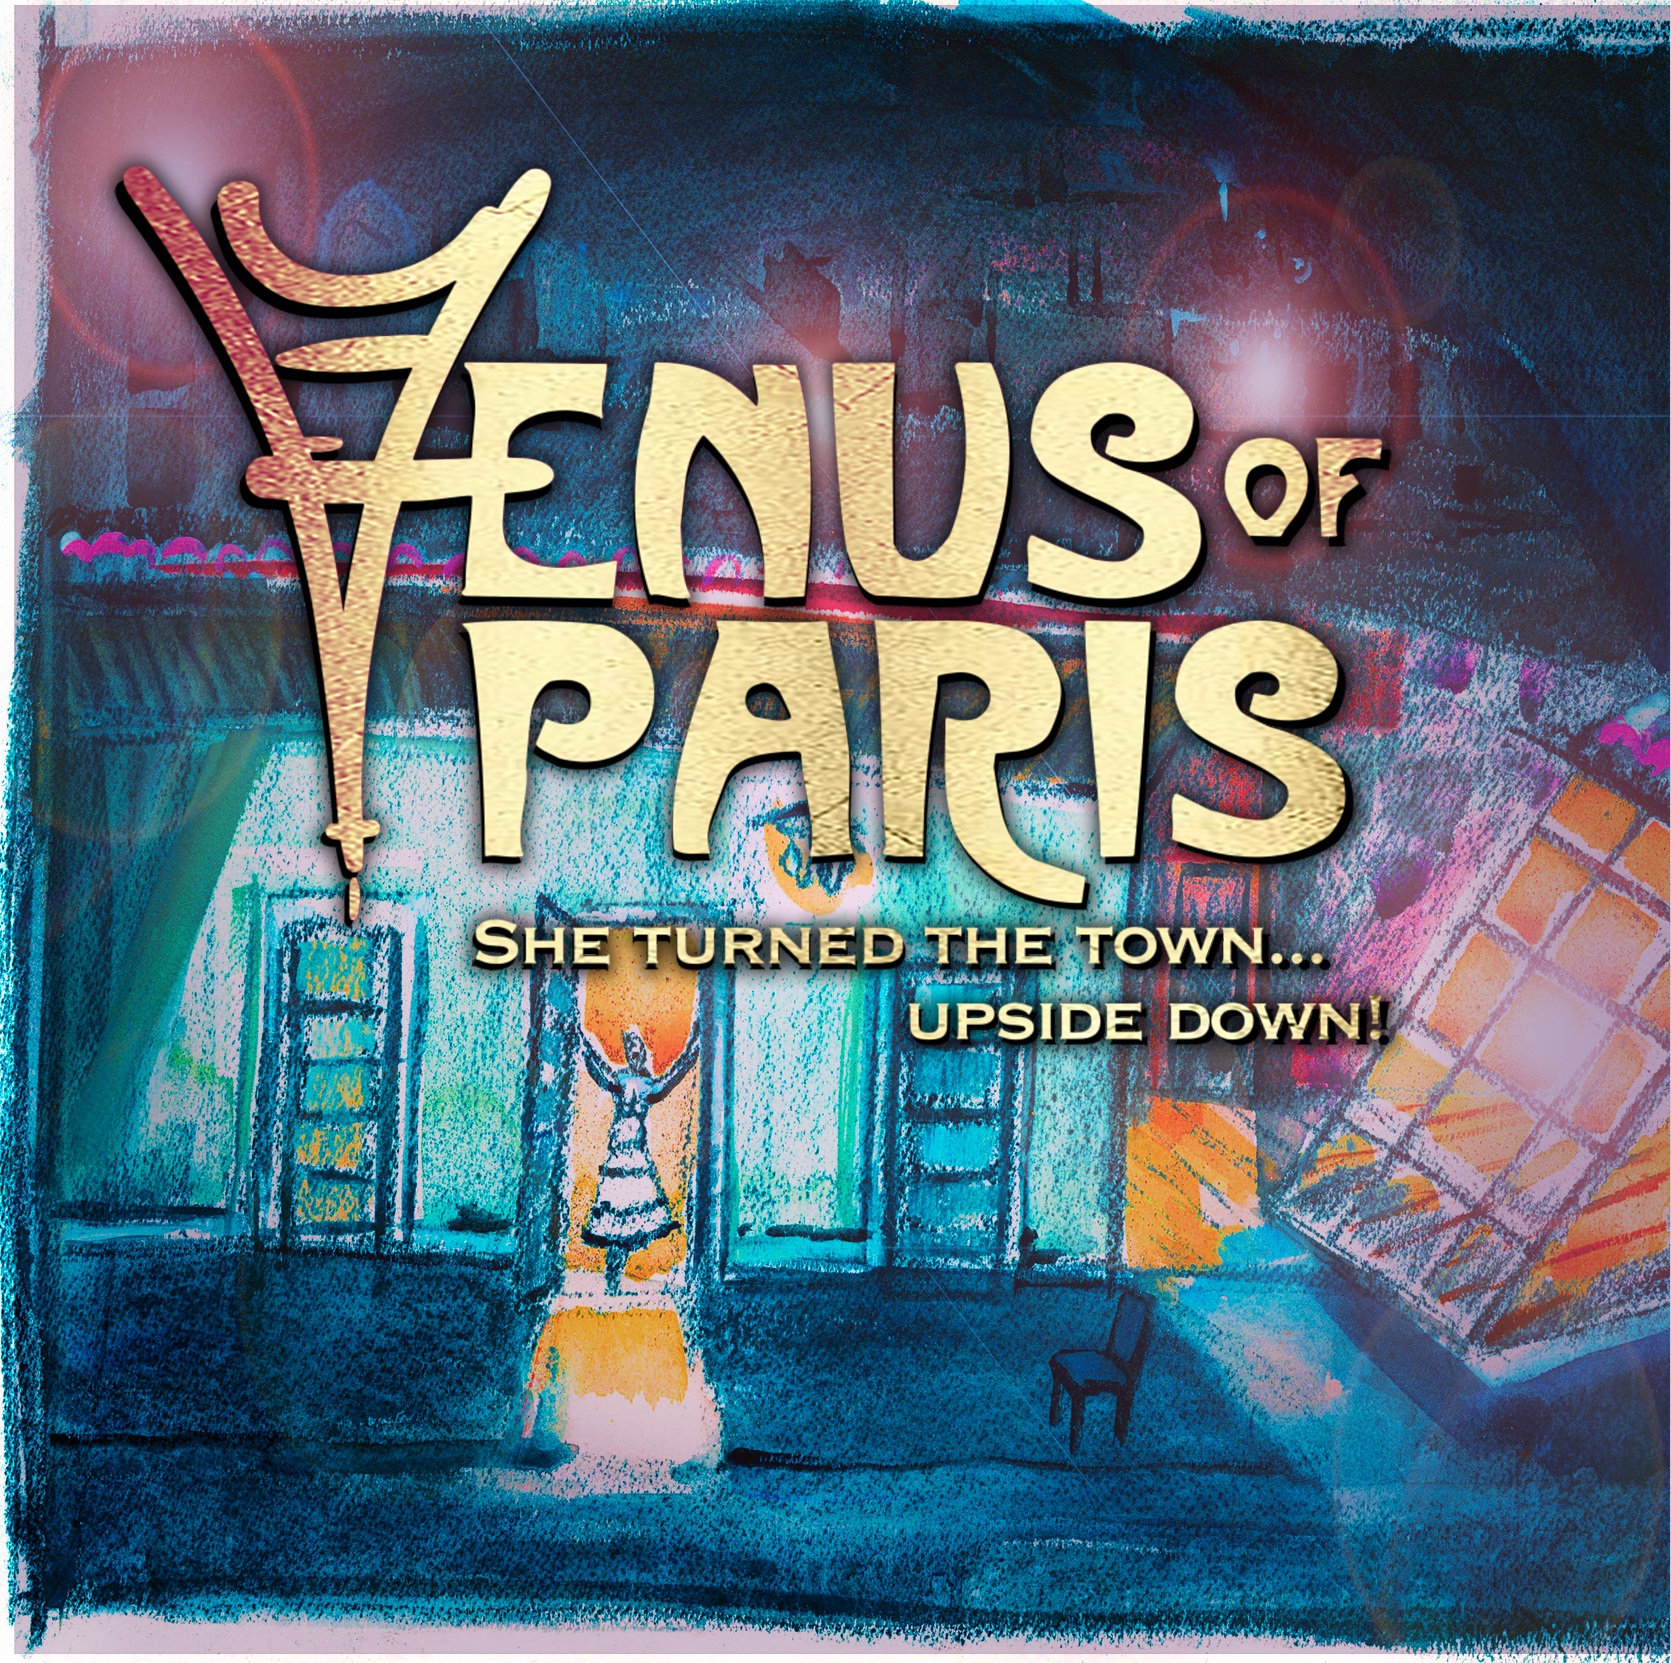 Venus-of-Paris